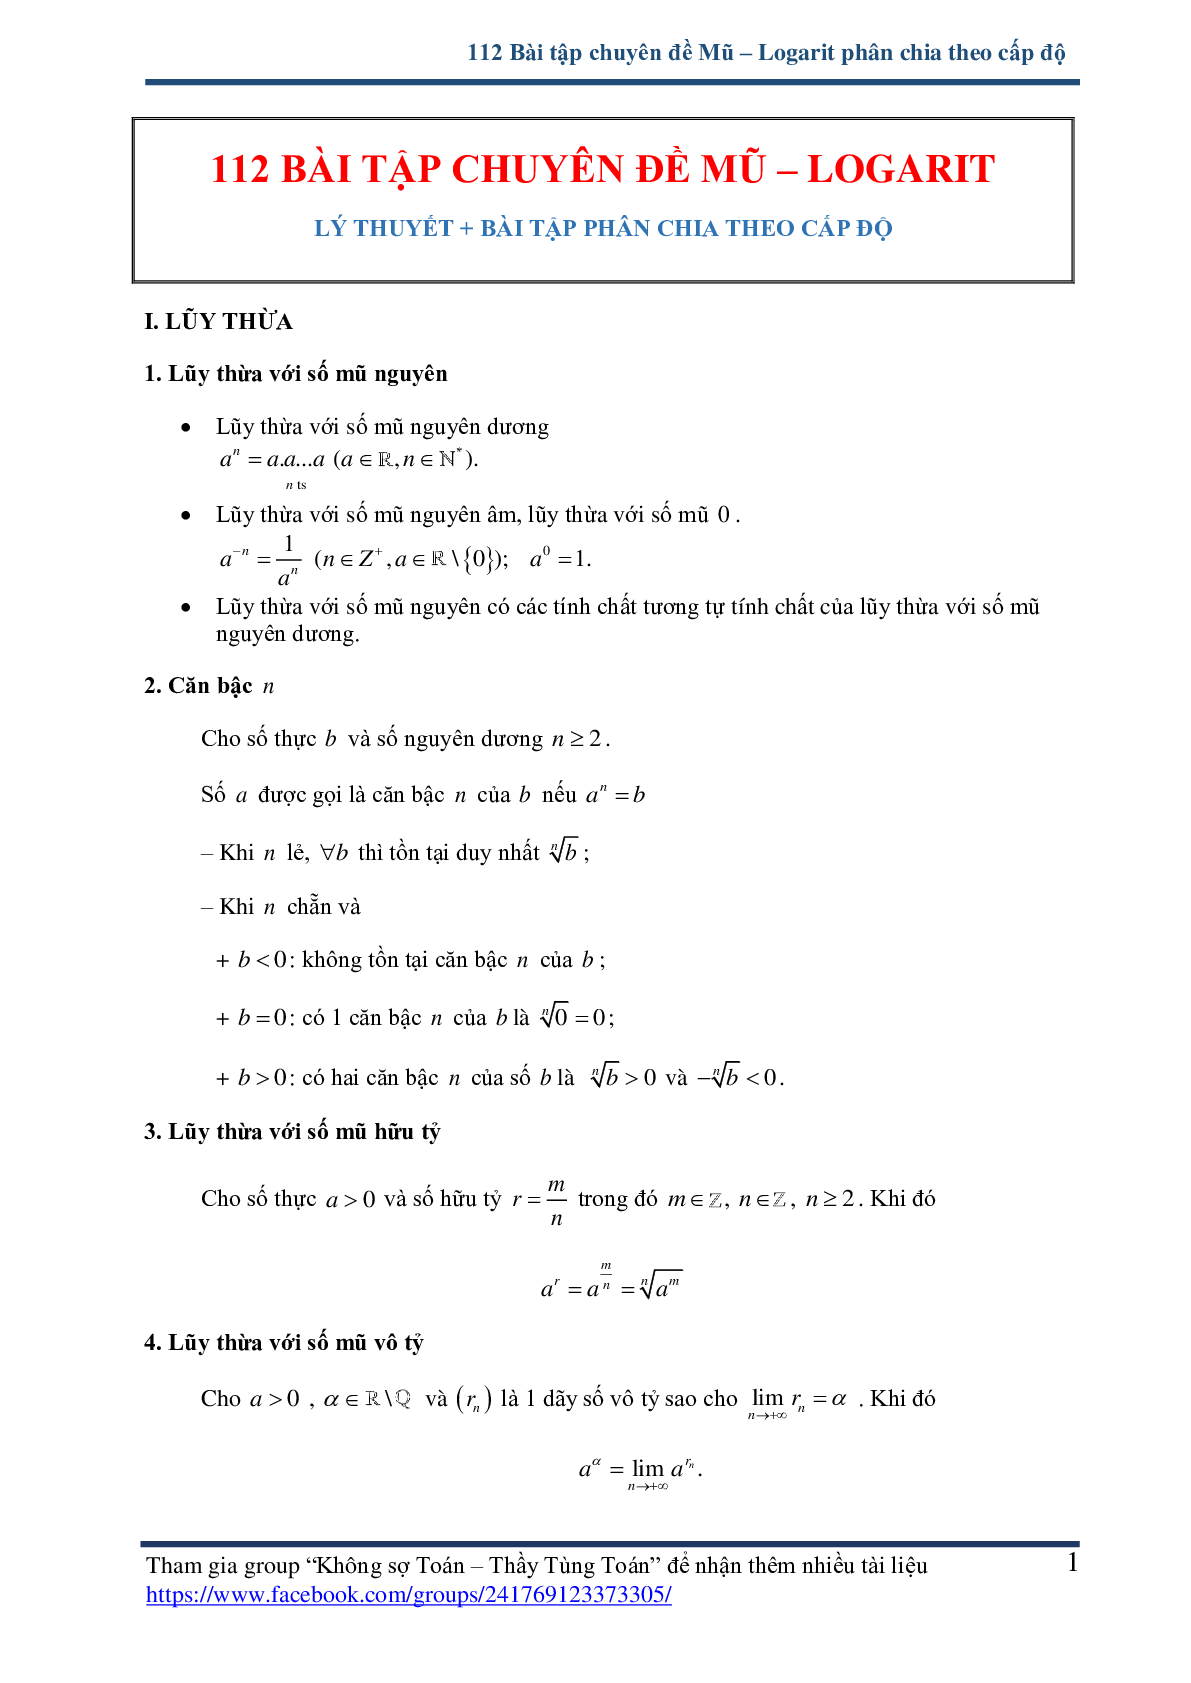 112 bài tập chuyên đề mũ và logarit - có lời giải chi tiết (trang 1)